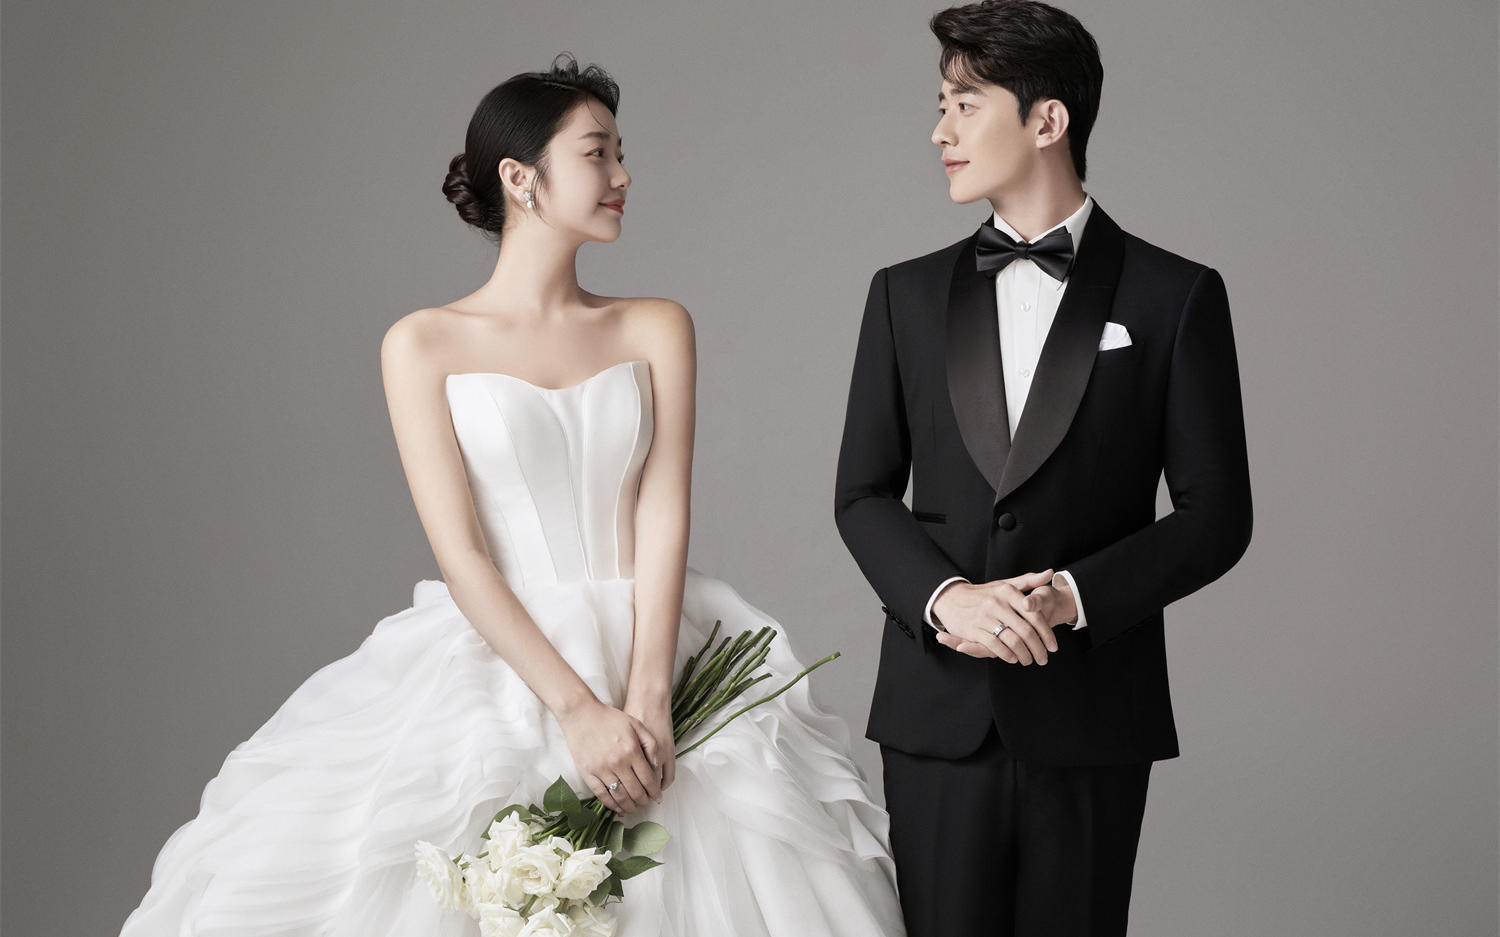 经典黑白高级感📷让人心动的极简韩式婚纱照💓